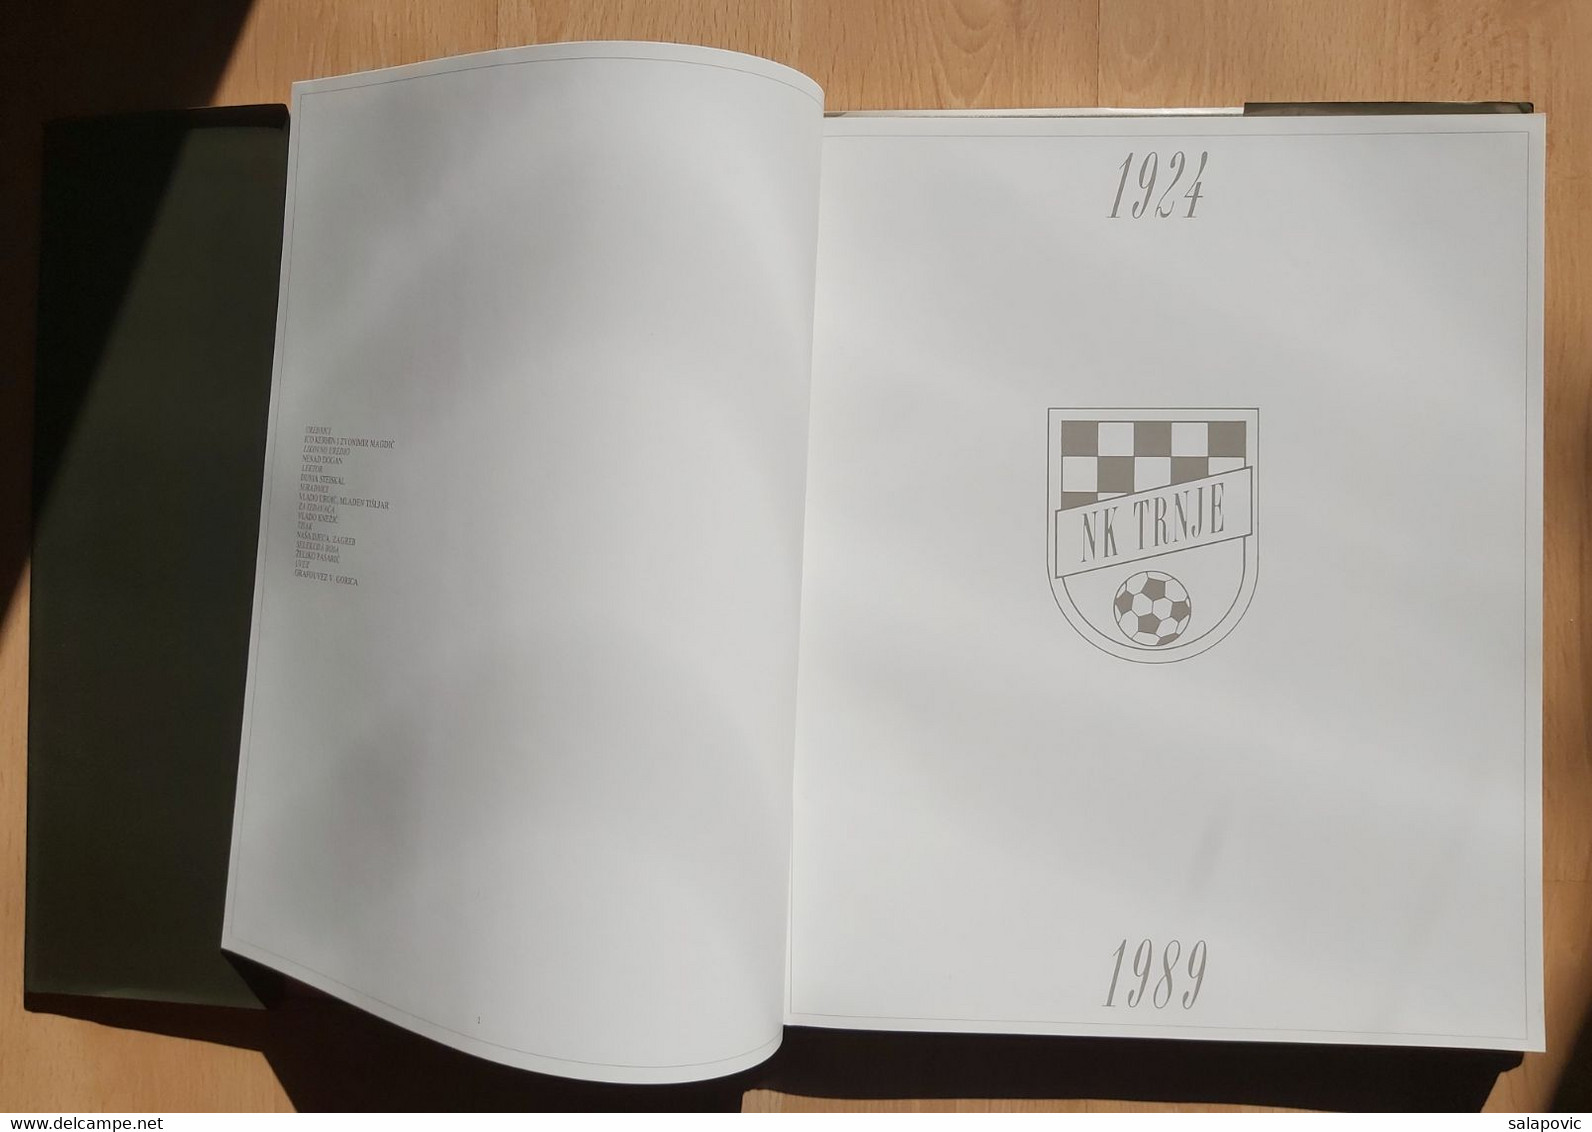 NK Trnje 1924-1989 Football Club, Croatia - Bücher